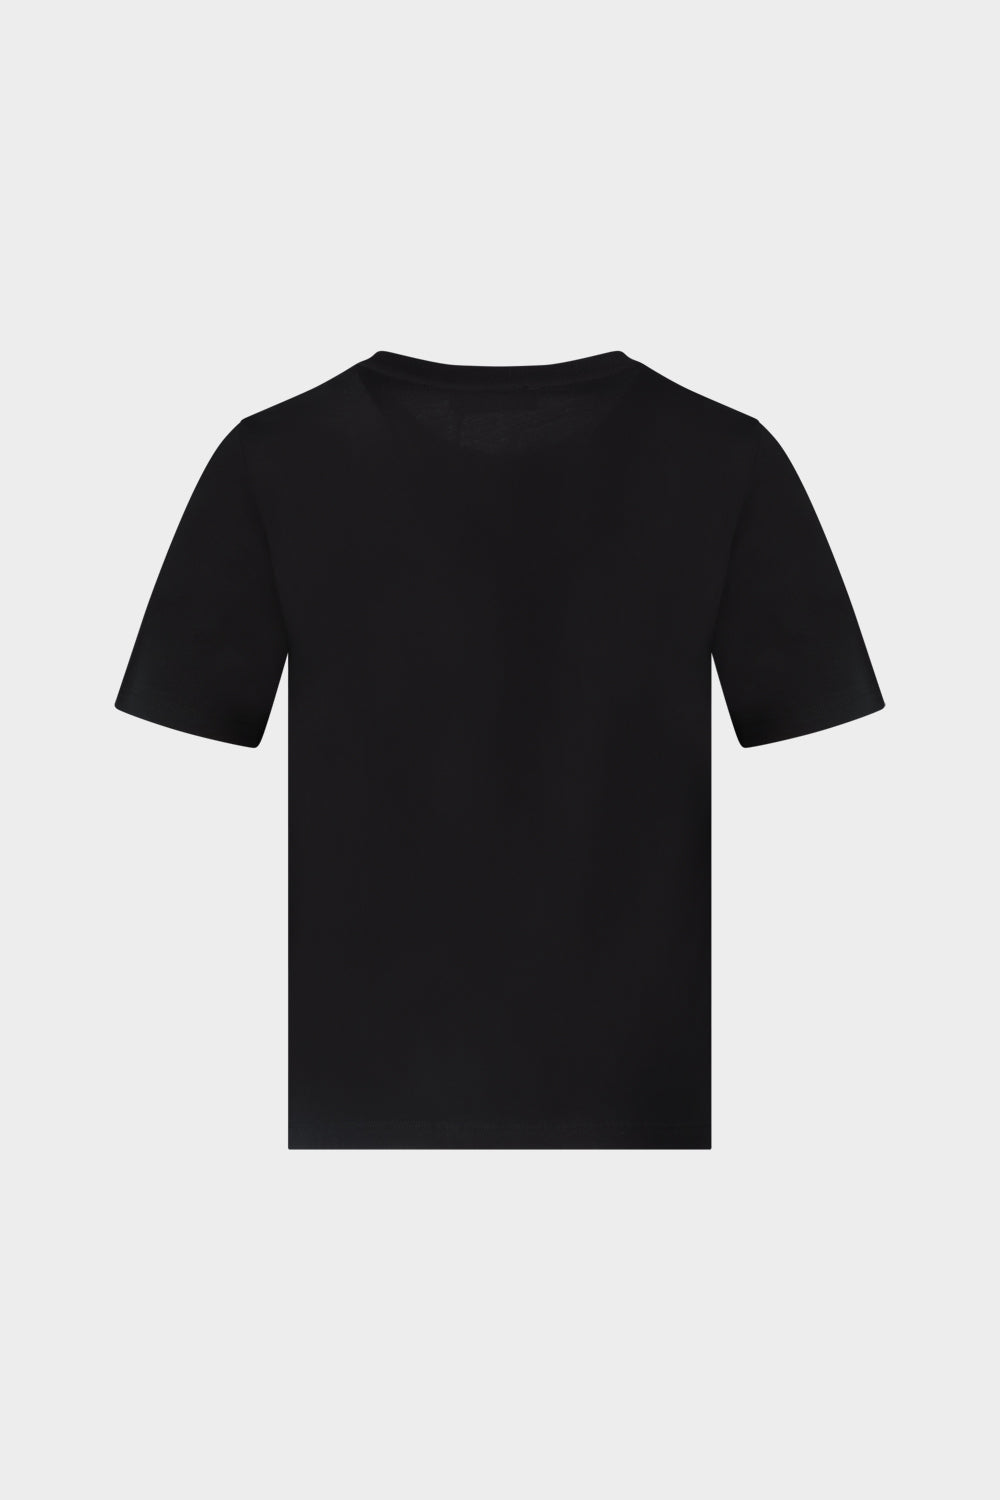 חולצת טי שירט לנשים הדפס תחש TRUSSARDI Vendome online | ונדום .